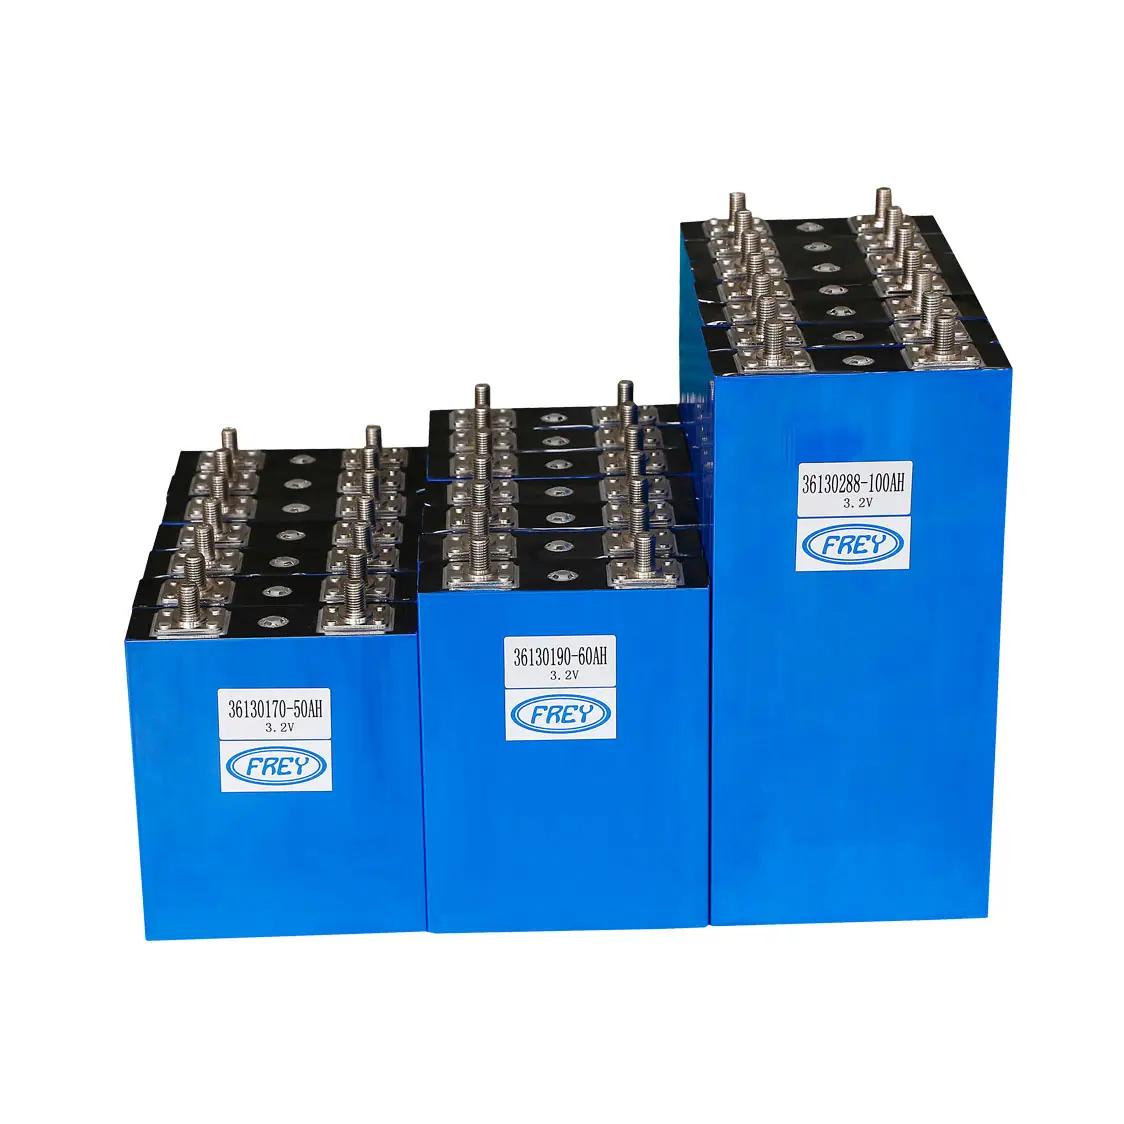 Freddy — batterie Lifepo4, lot de 4, cellules prismatique, 3.2v, 60ah, 100ah, avec boîtier en aluminium, Lithium fer Phosphate, pour véhicules électriques